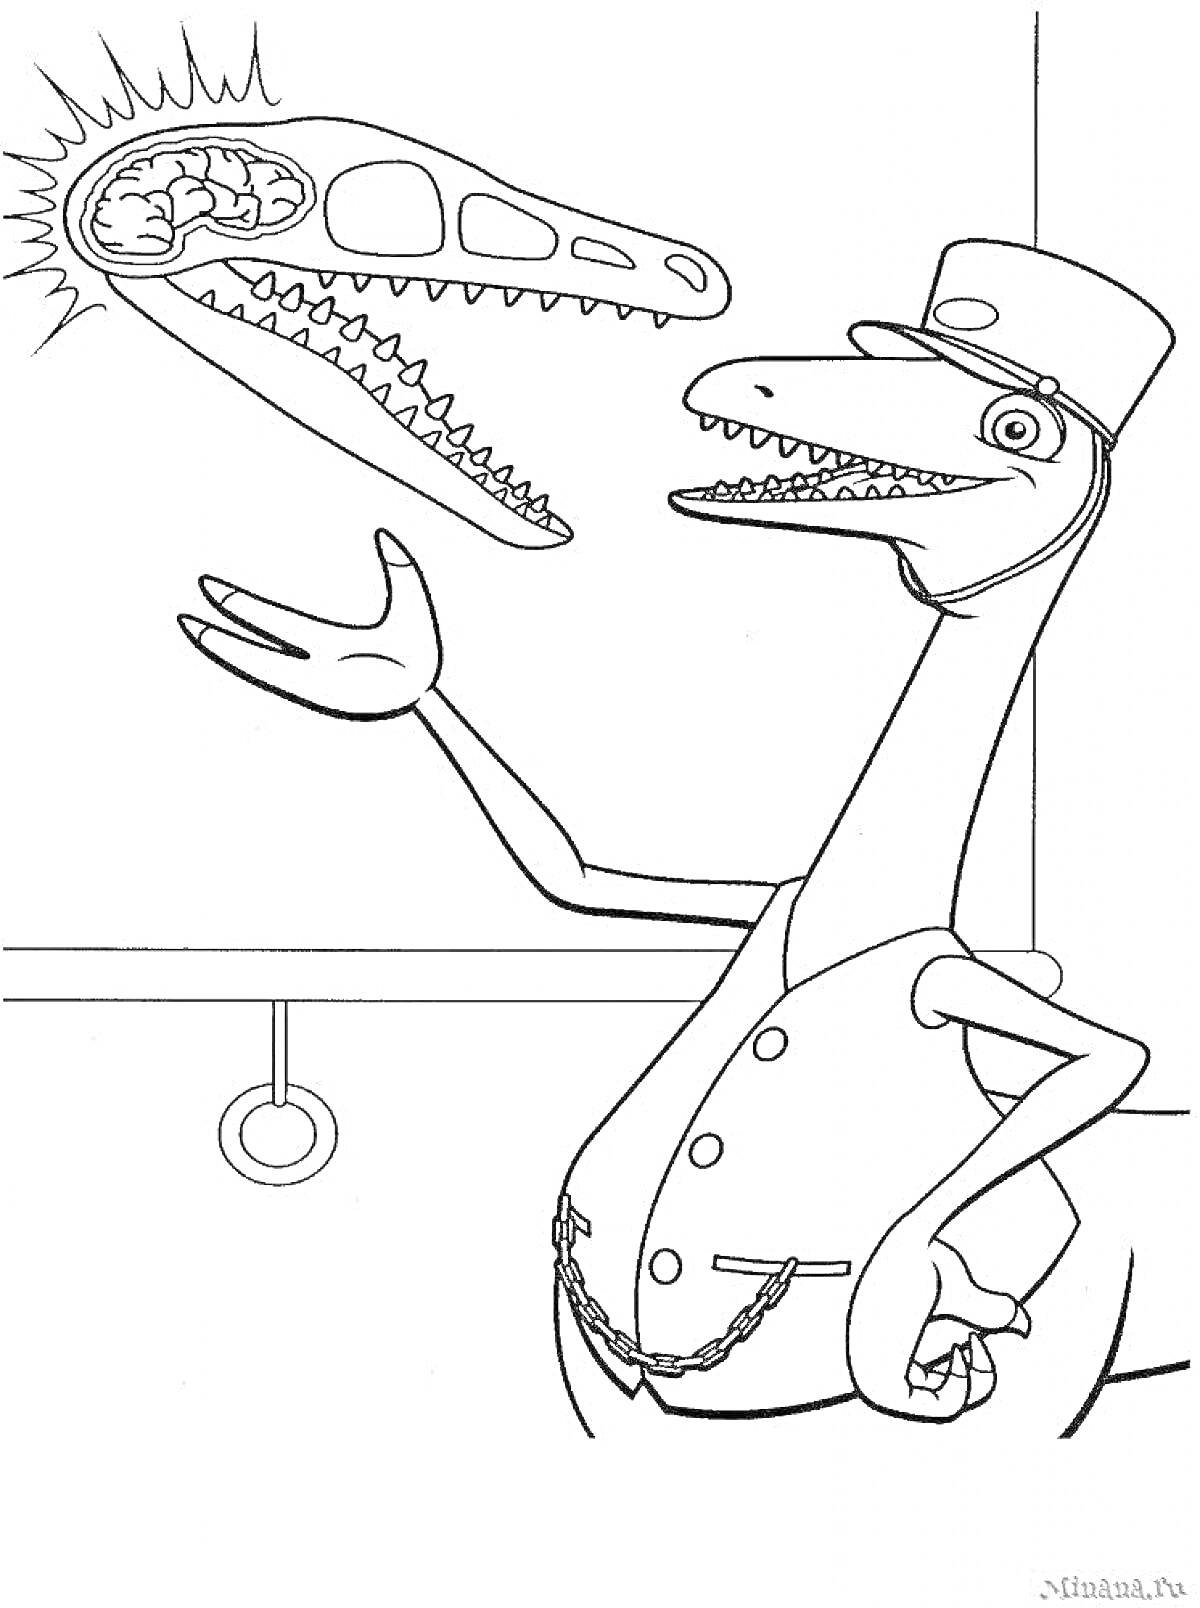 Раскраска Динозавр в жилете и шляпе у доски объясняет строение черепа динозавра